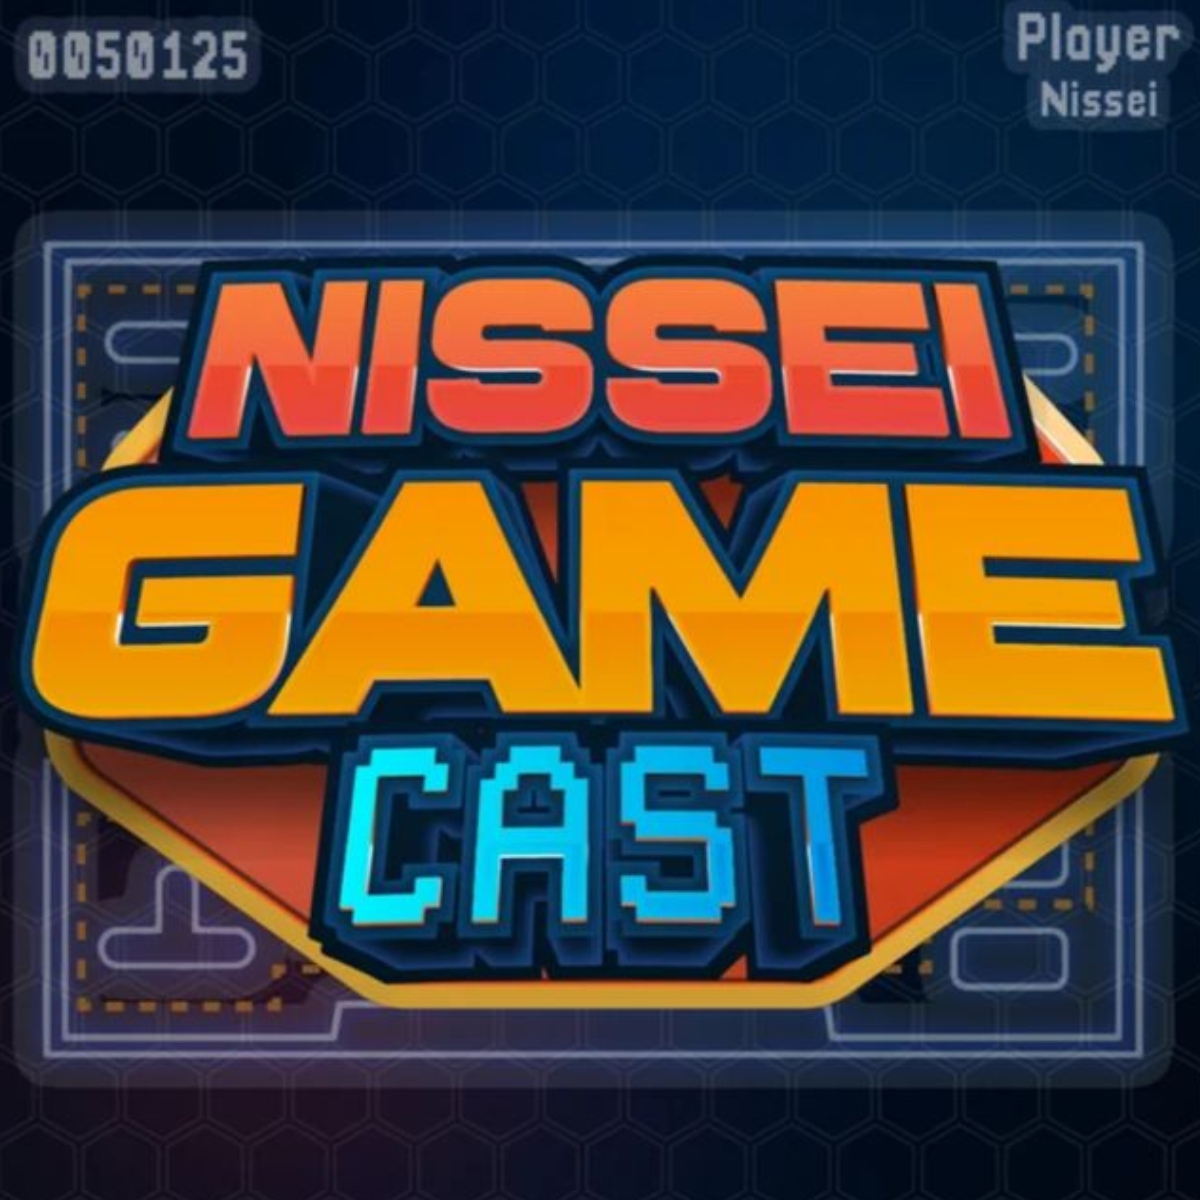  ‘Nissei Game Cast’ jogos que marcaram vidas 